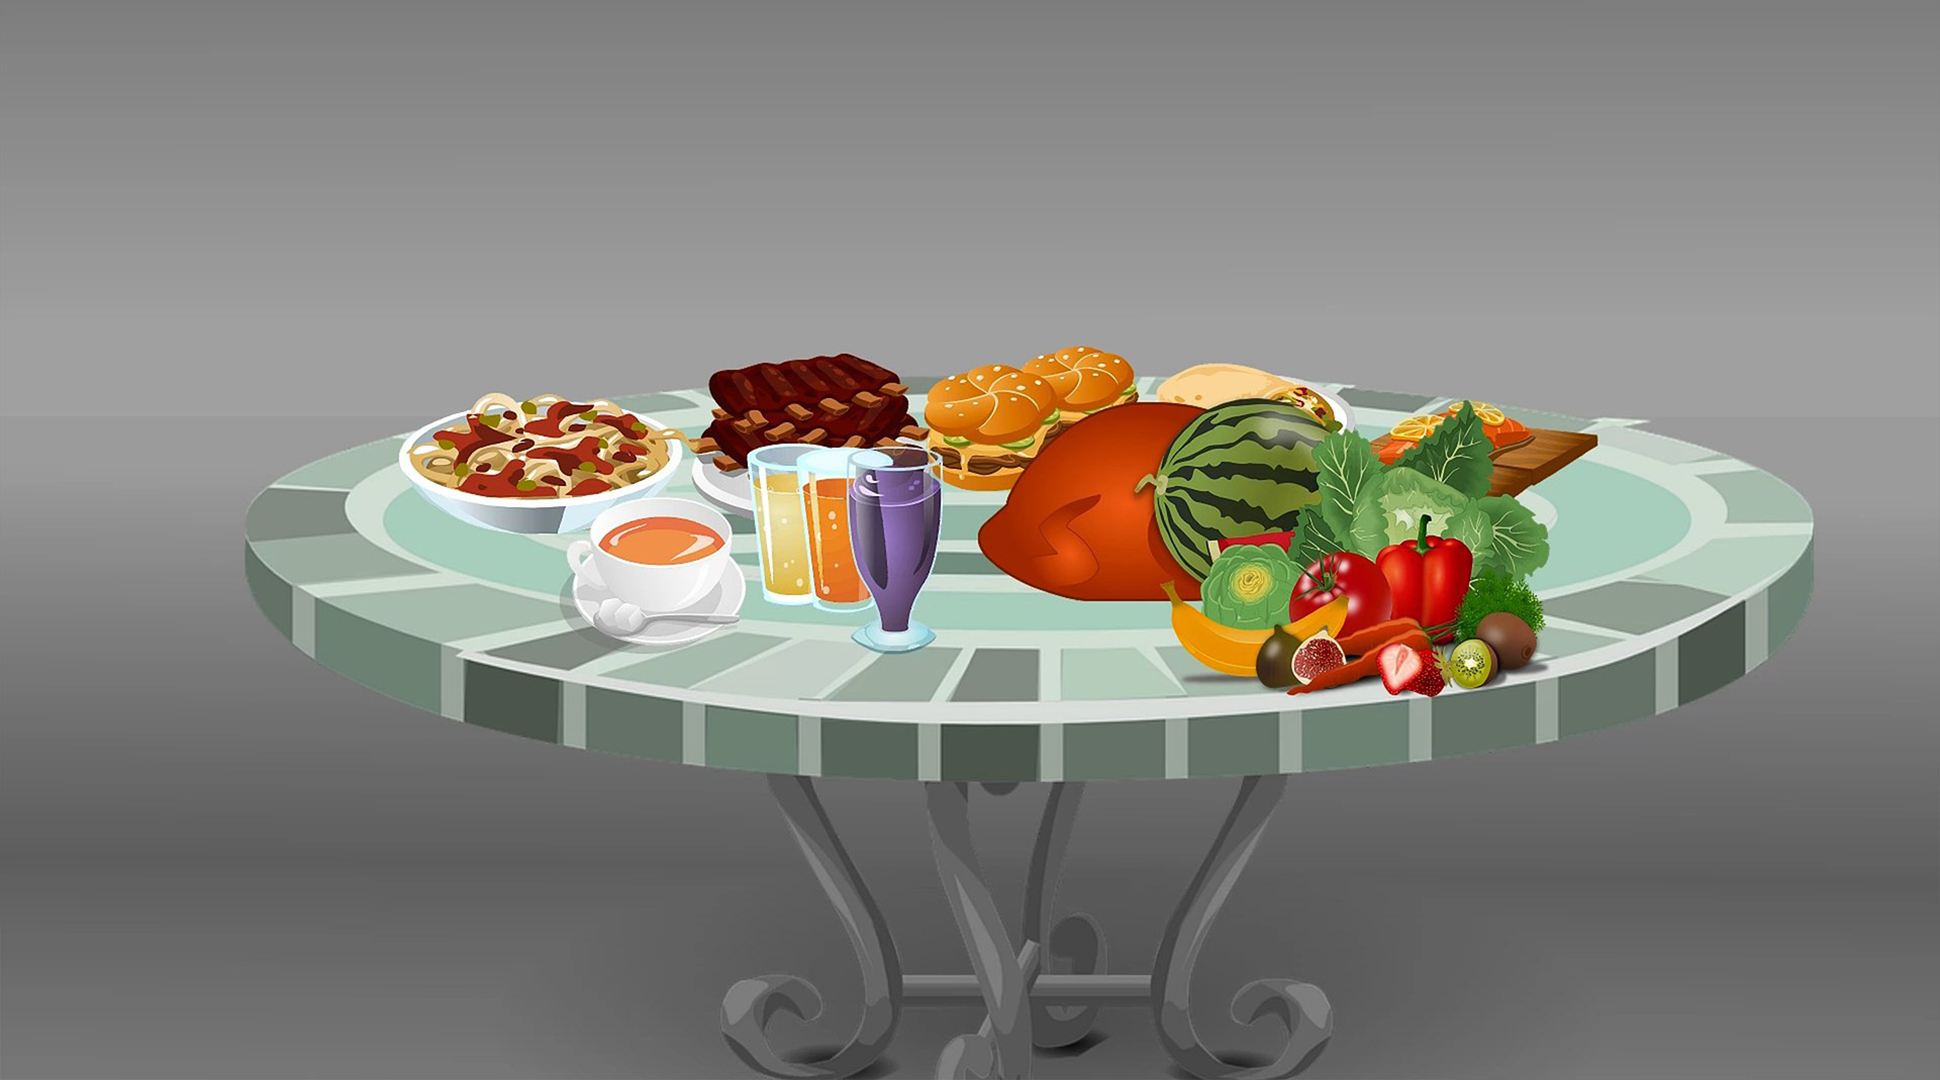 Мультяшный стол с едой